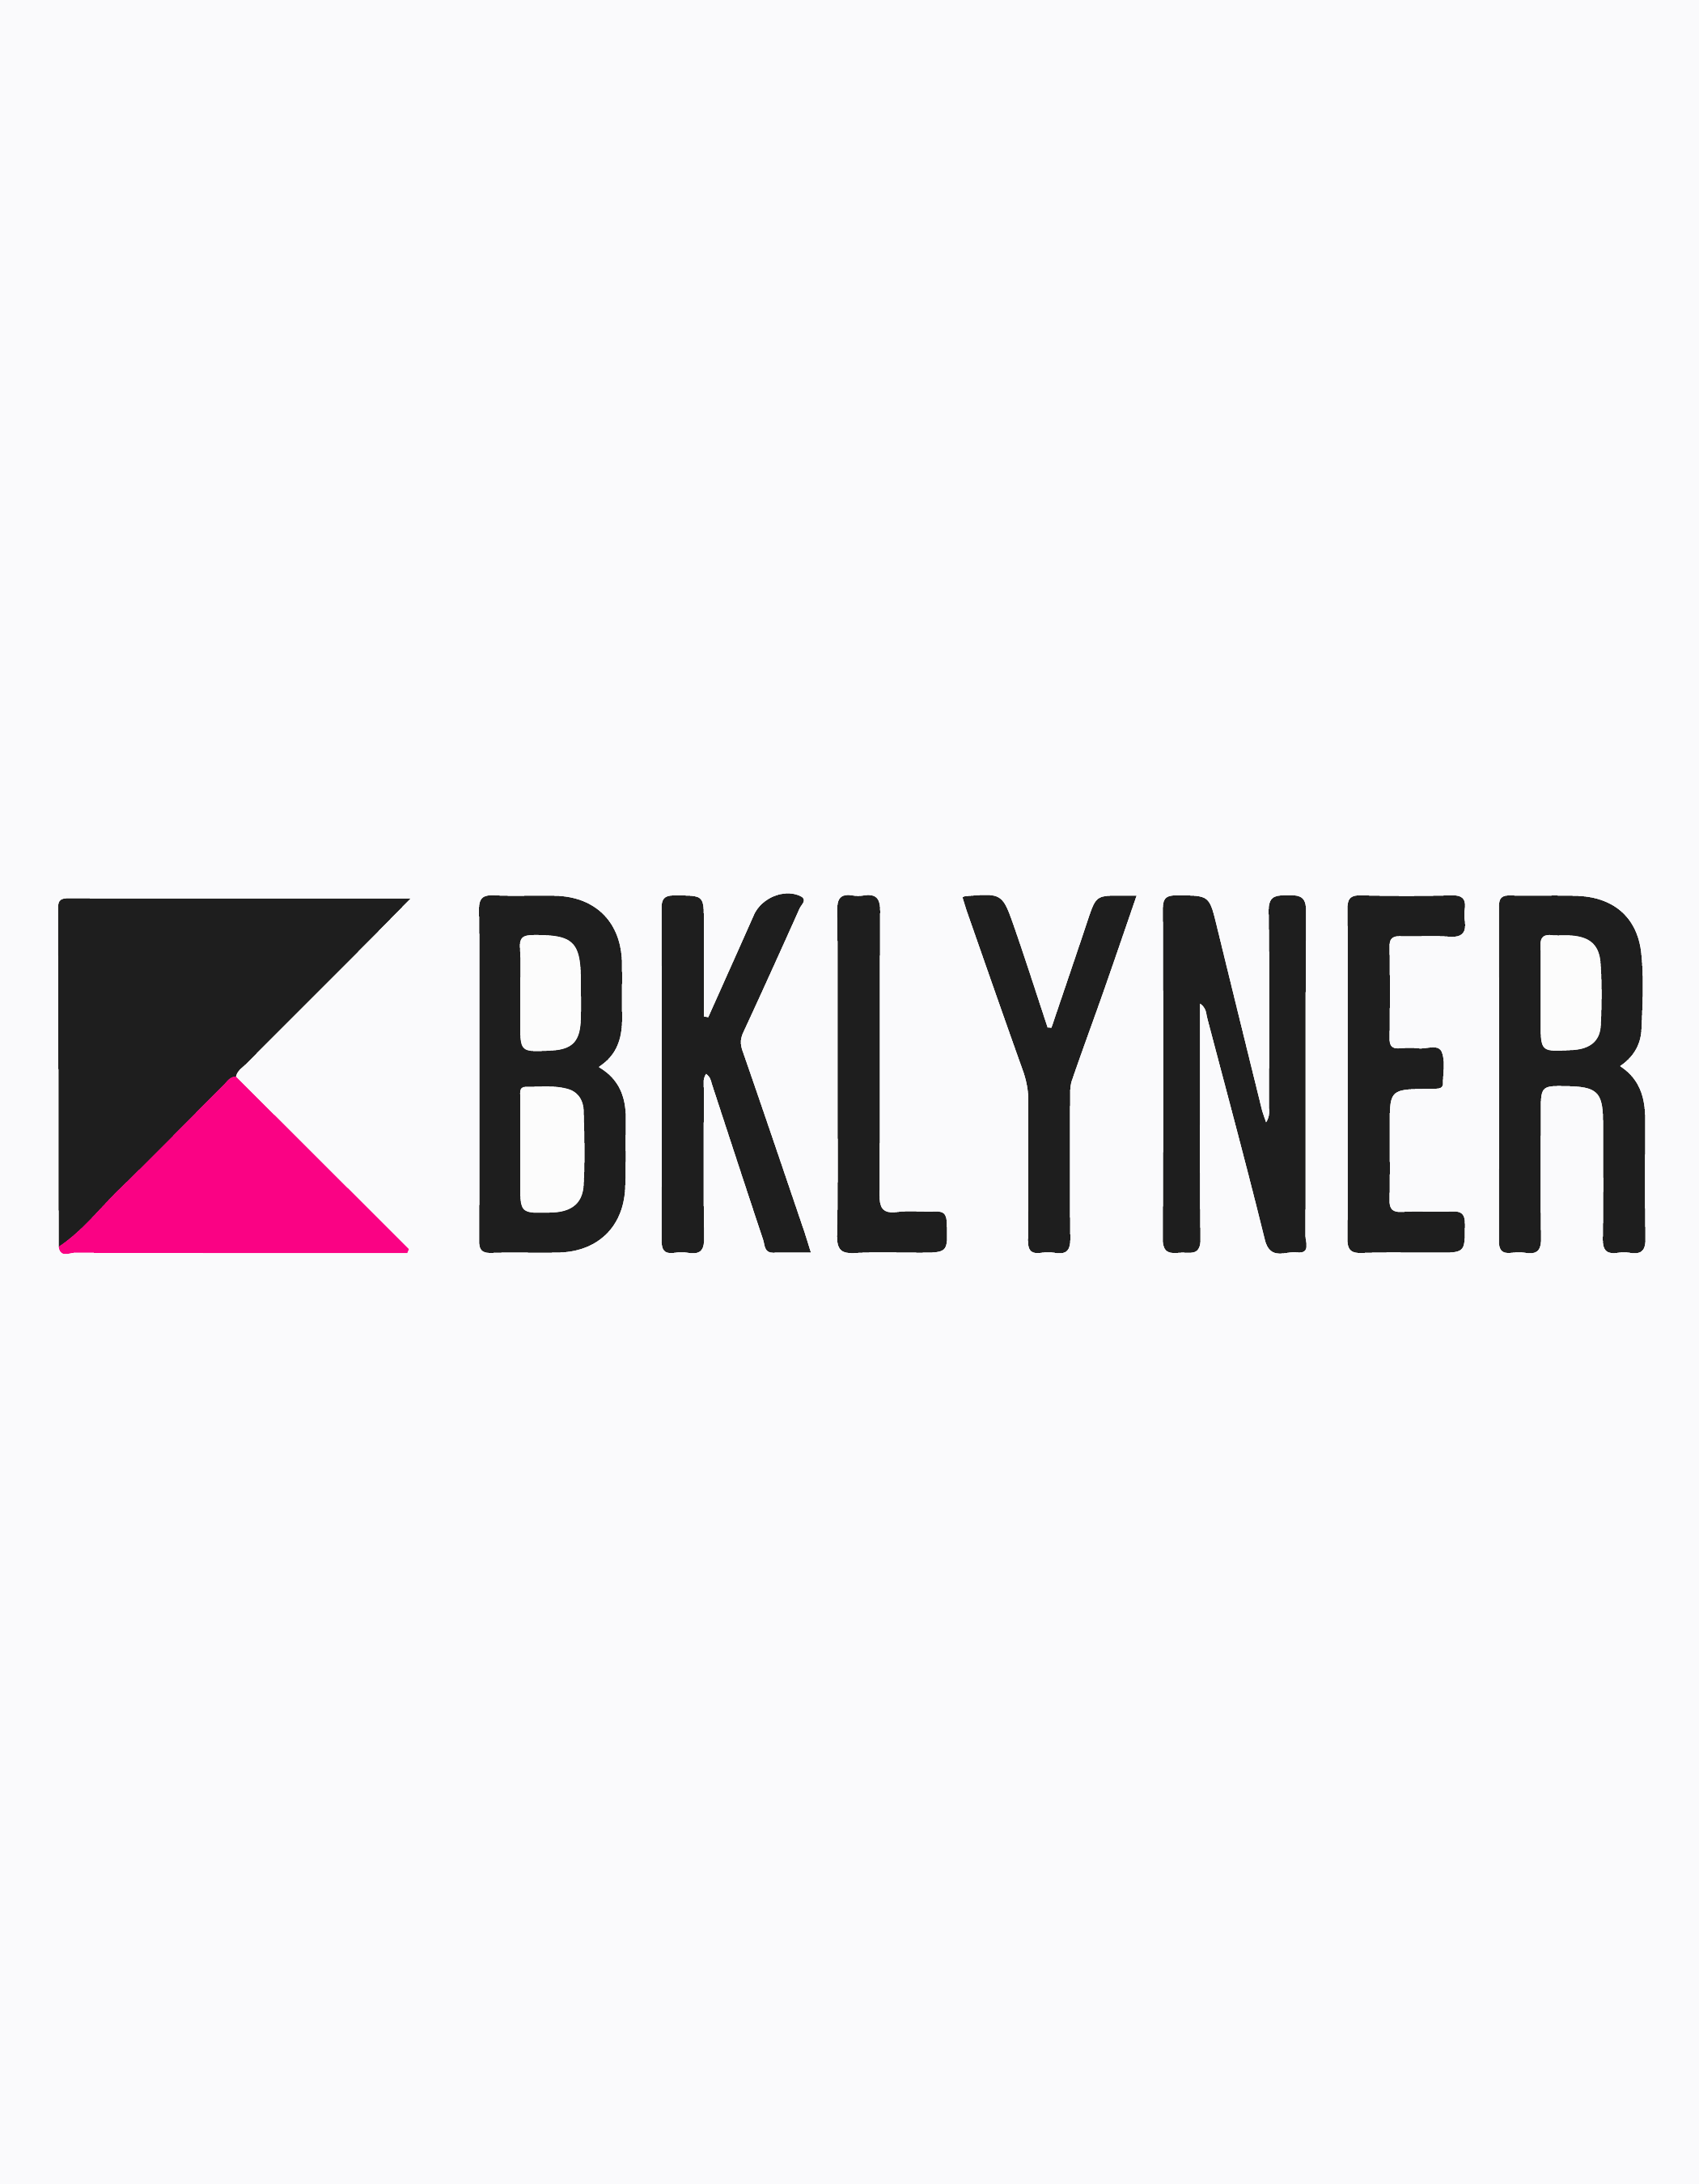 Bklyner | 2017